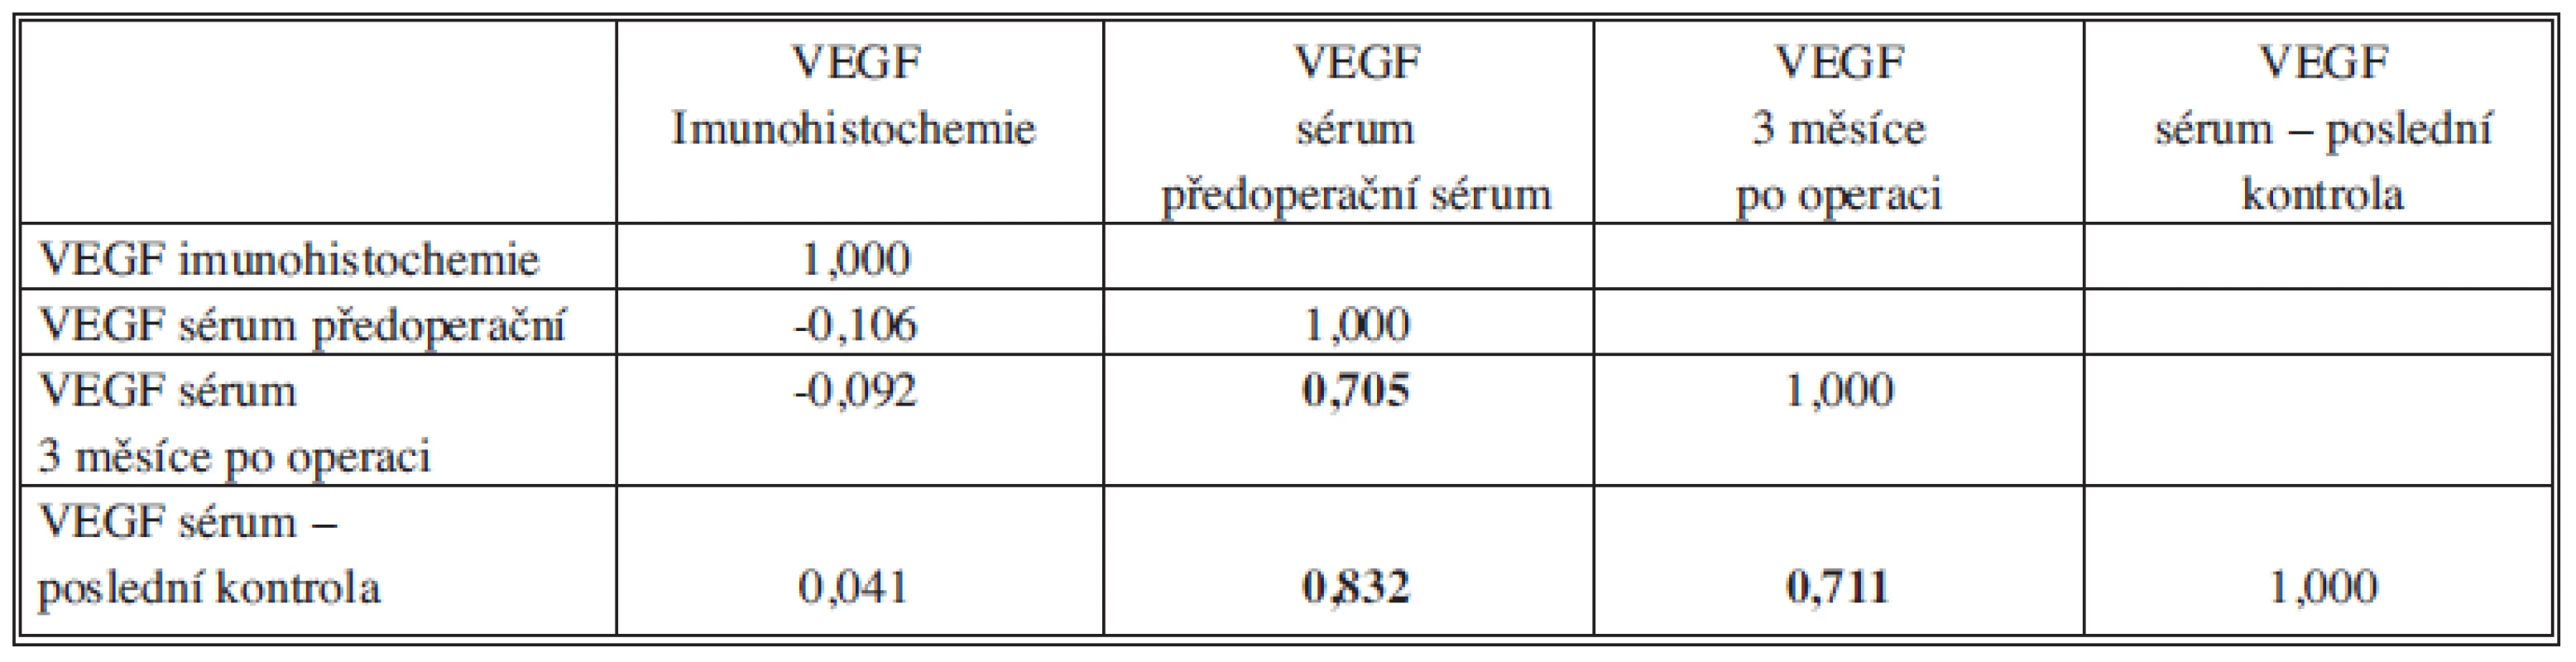 Spearmannovy korelační koeficienty mezi imunohistochemickou koncentrací VEGF v histologickém vzorku a sérovými hladinami VEGF v průběhu sledování. Tučně jsou vyznačeny významné korelace.
Tab. 1: Spearman´s correlation coefficients for VEGF levels on immunohistochemical specimen and in blood serum before surgerz and in follow-up. Significant correlations are marked in bold.